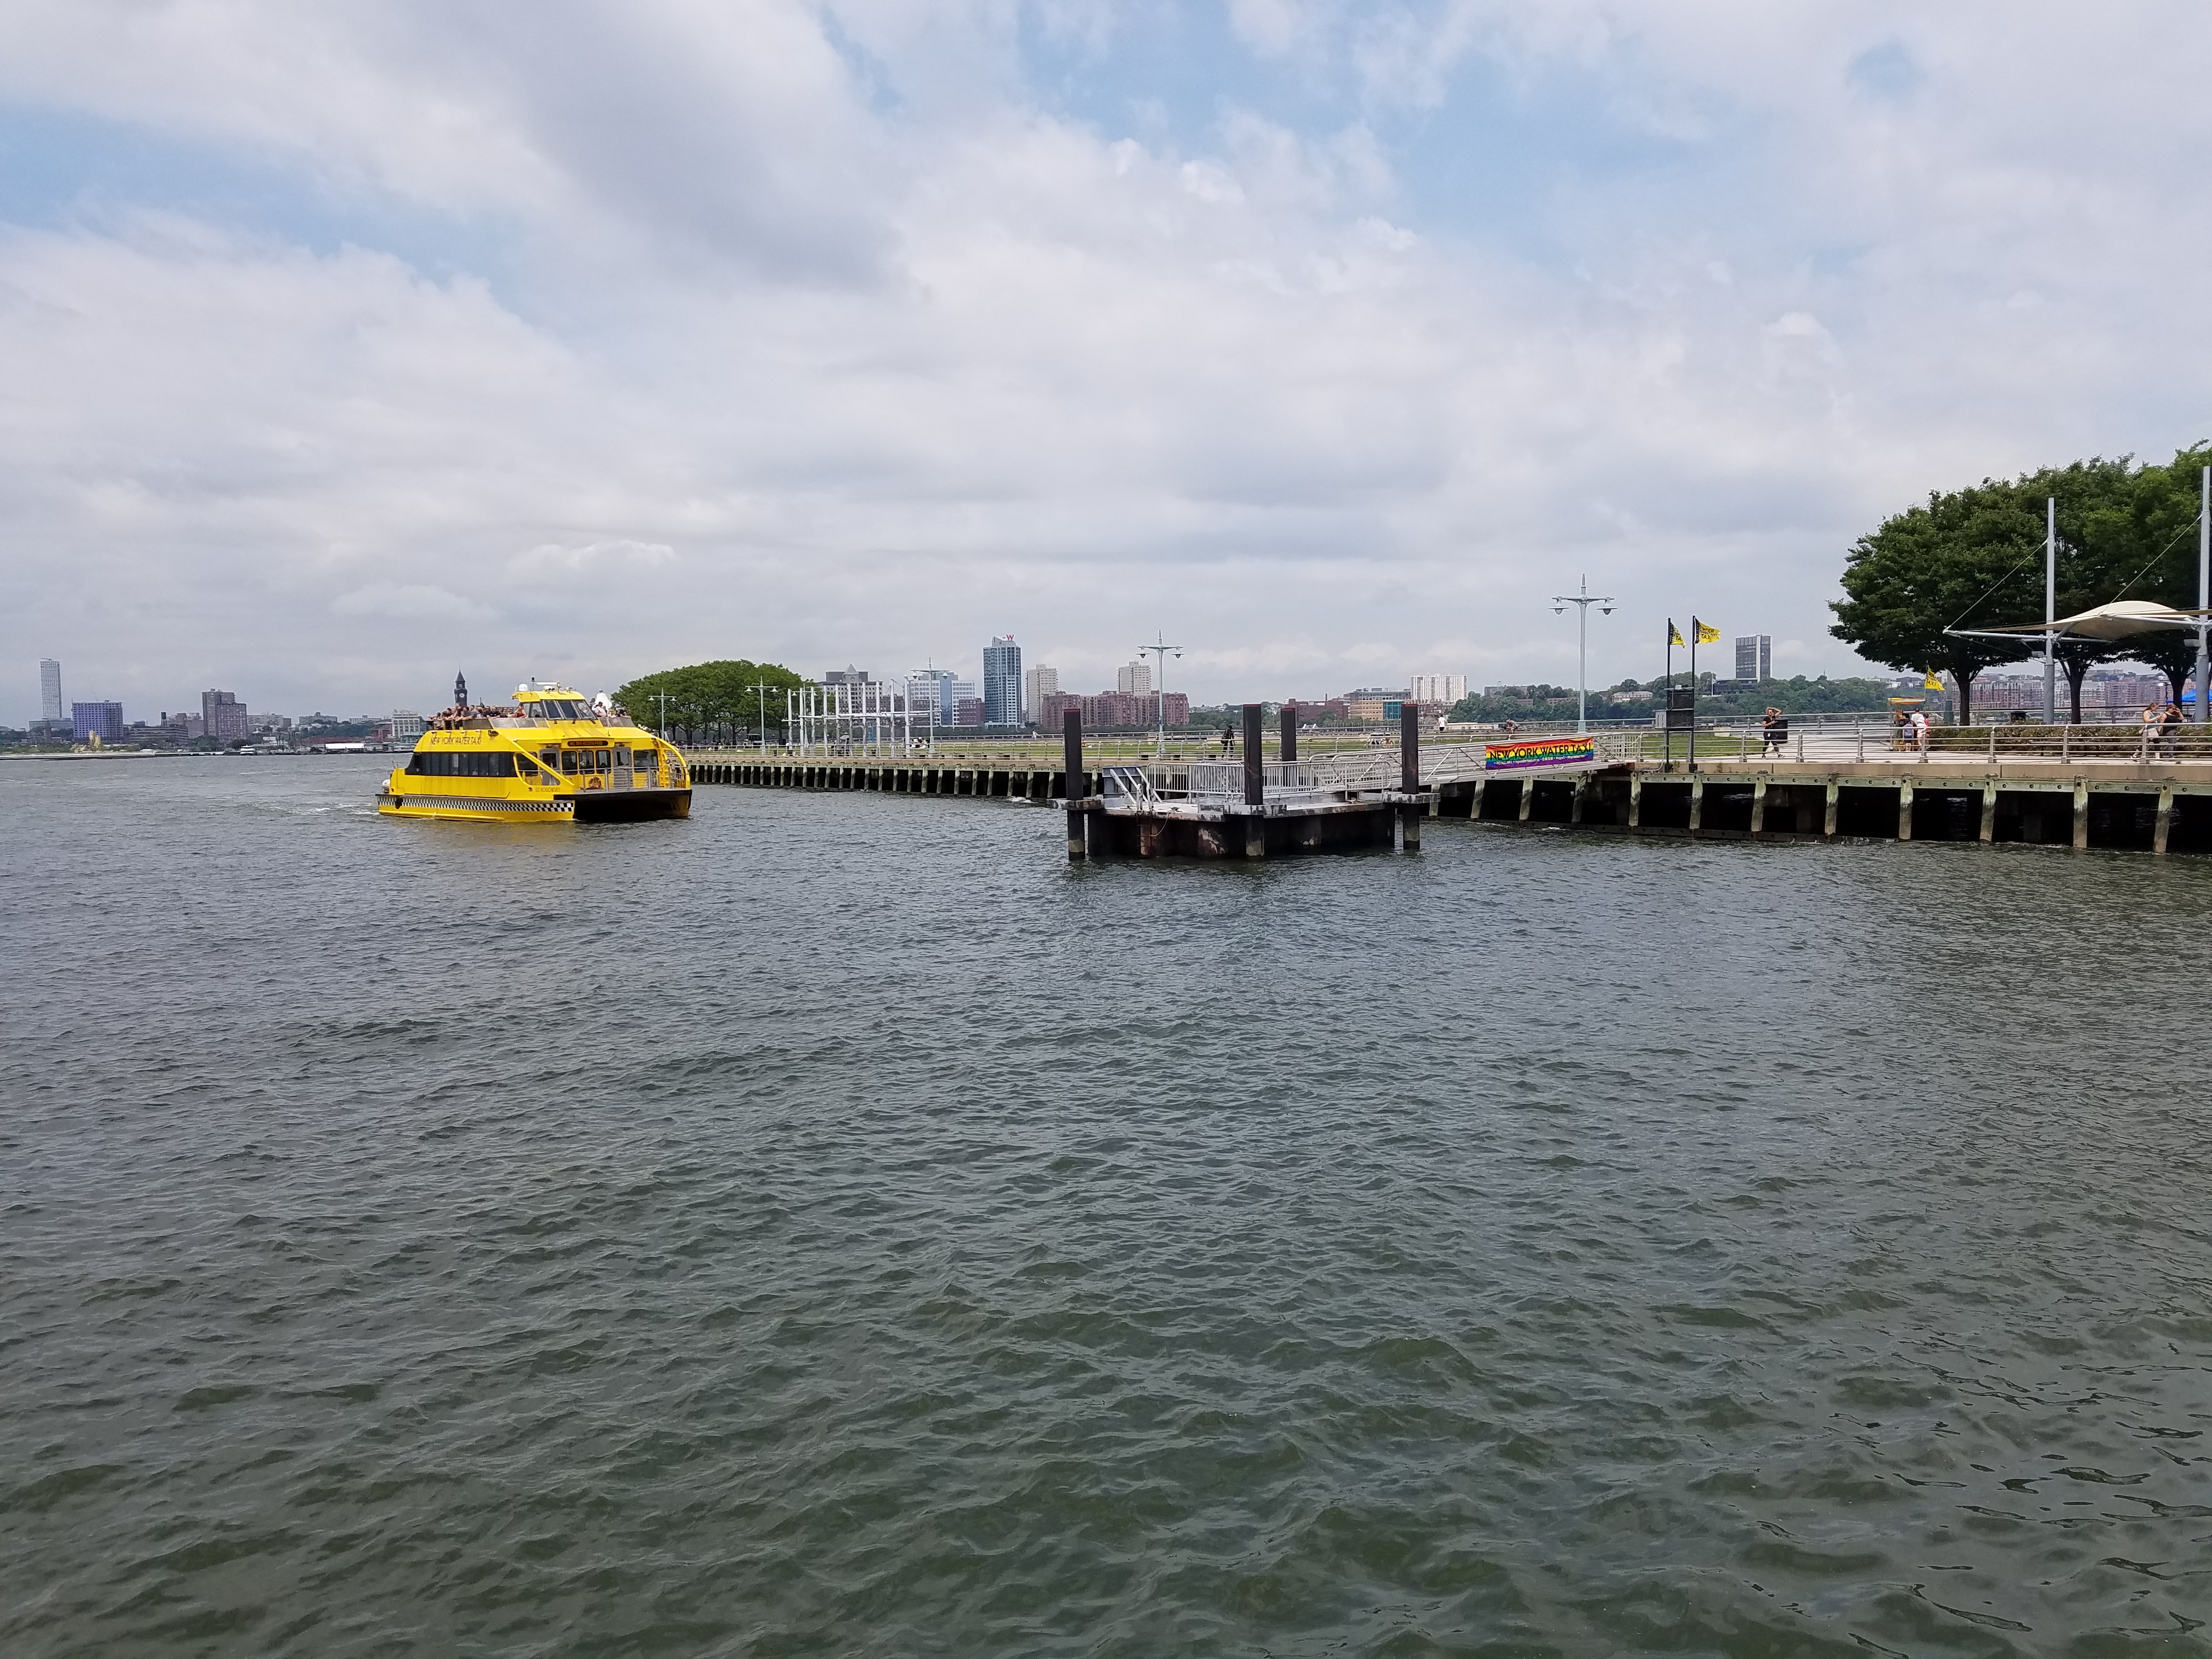 Observation 3: Hudson River (Pier 45)